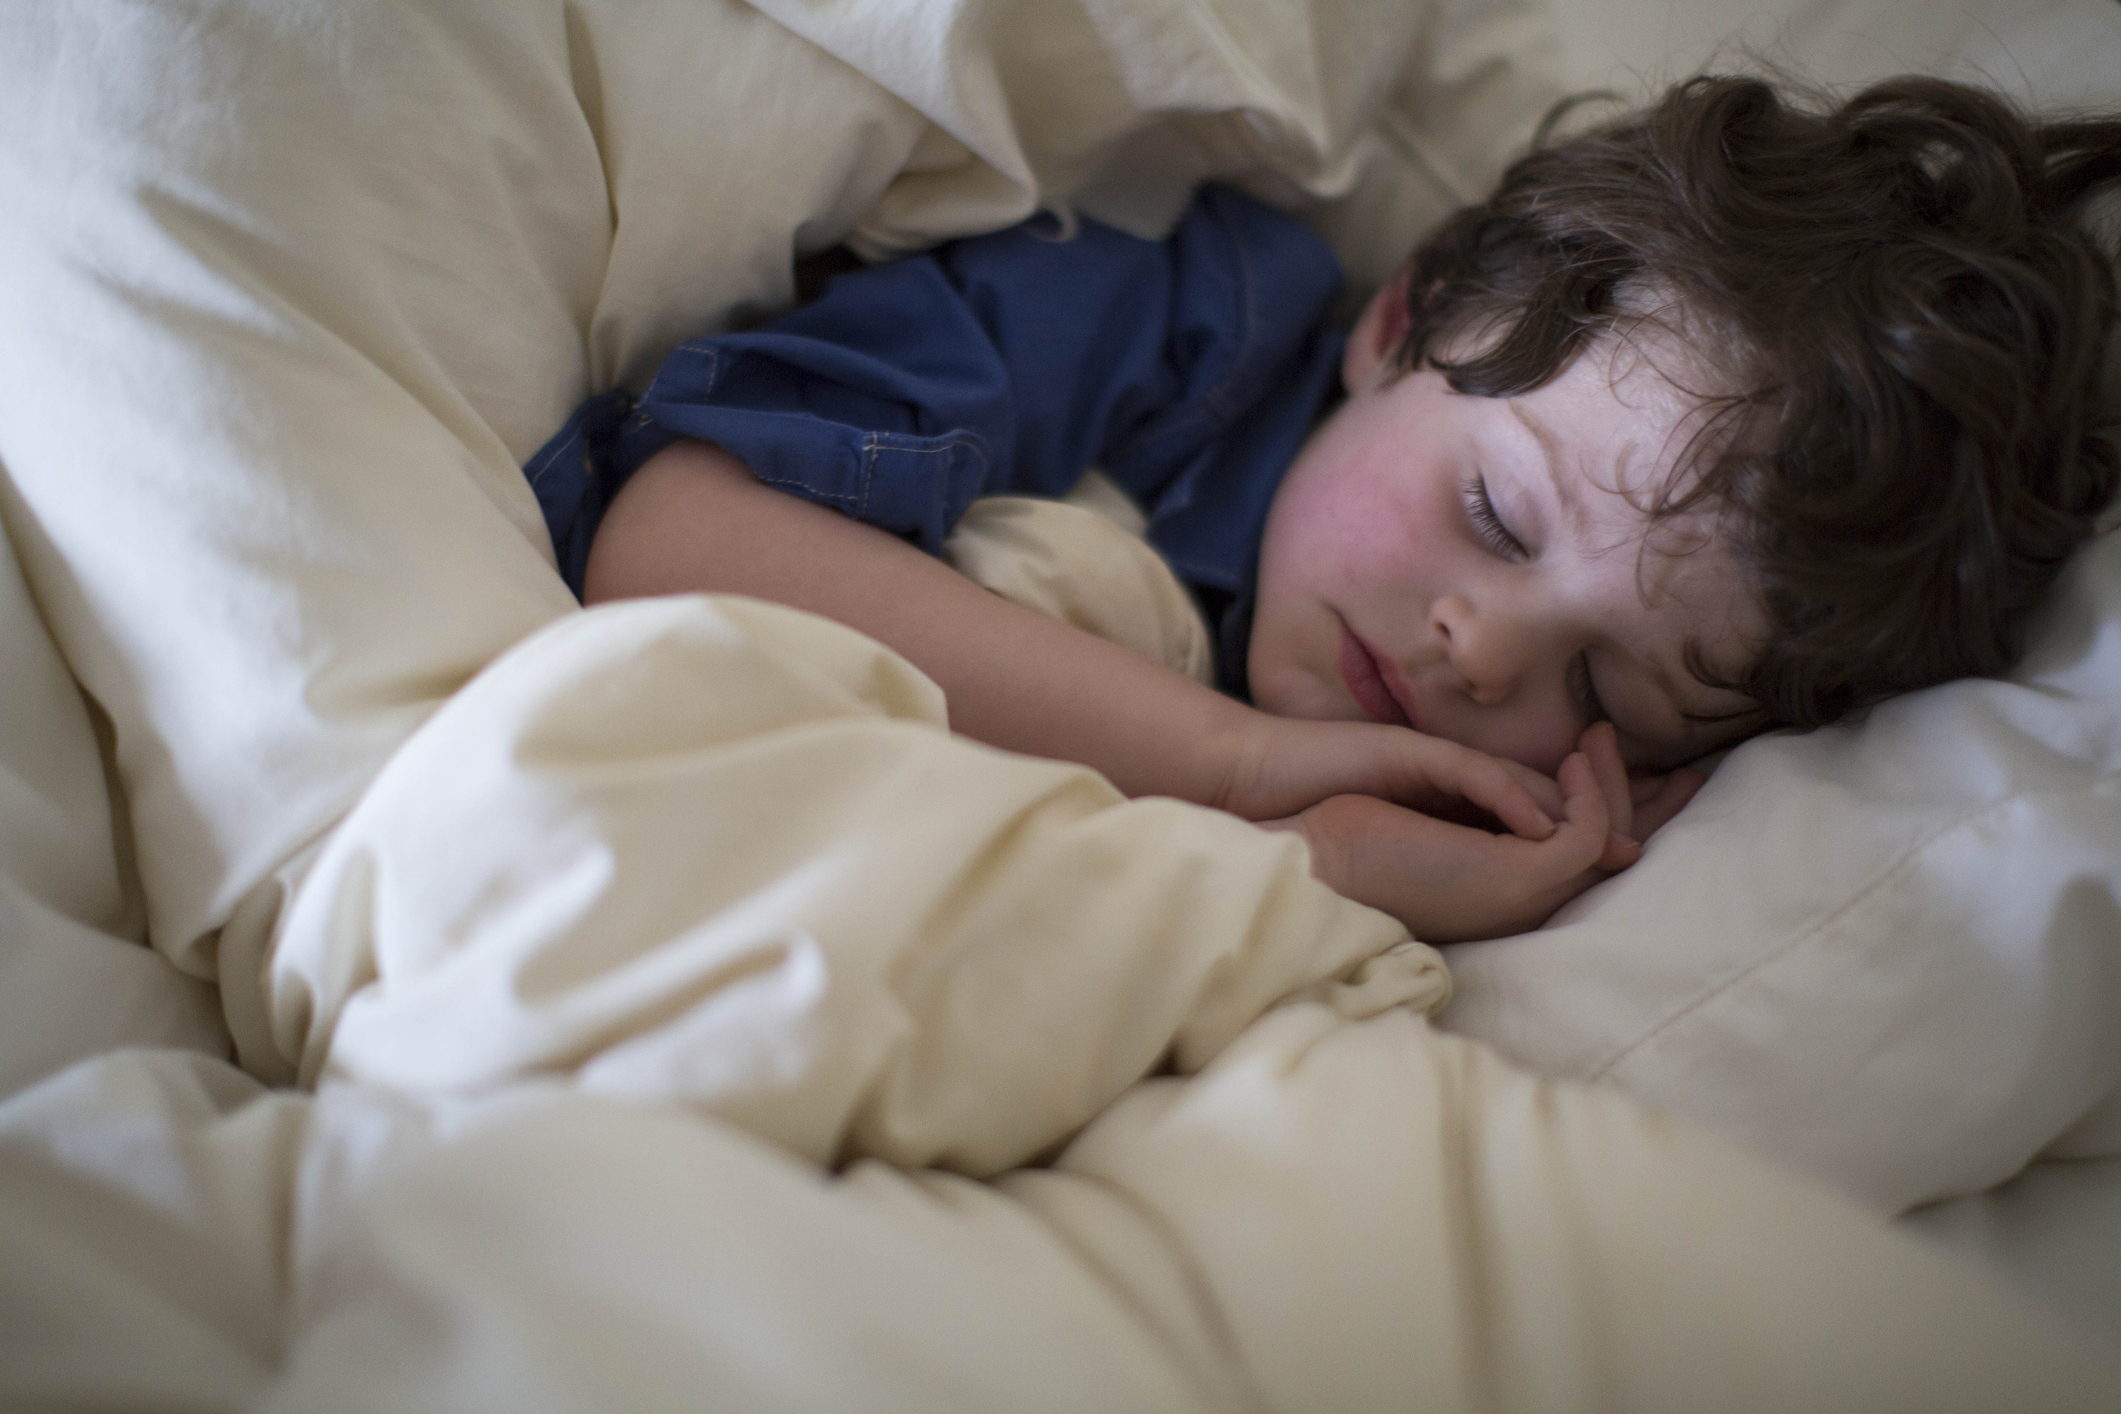 Ребенок скрежещет во сне. Сон6. Ребёнок засыпает в 6 вечера. Спящие детки фотограф Рейнольдс.